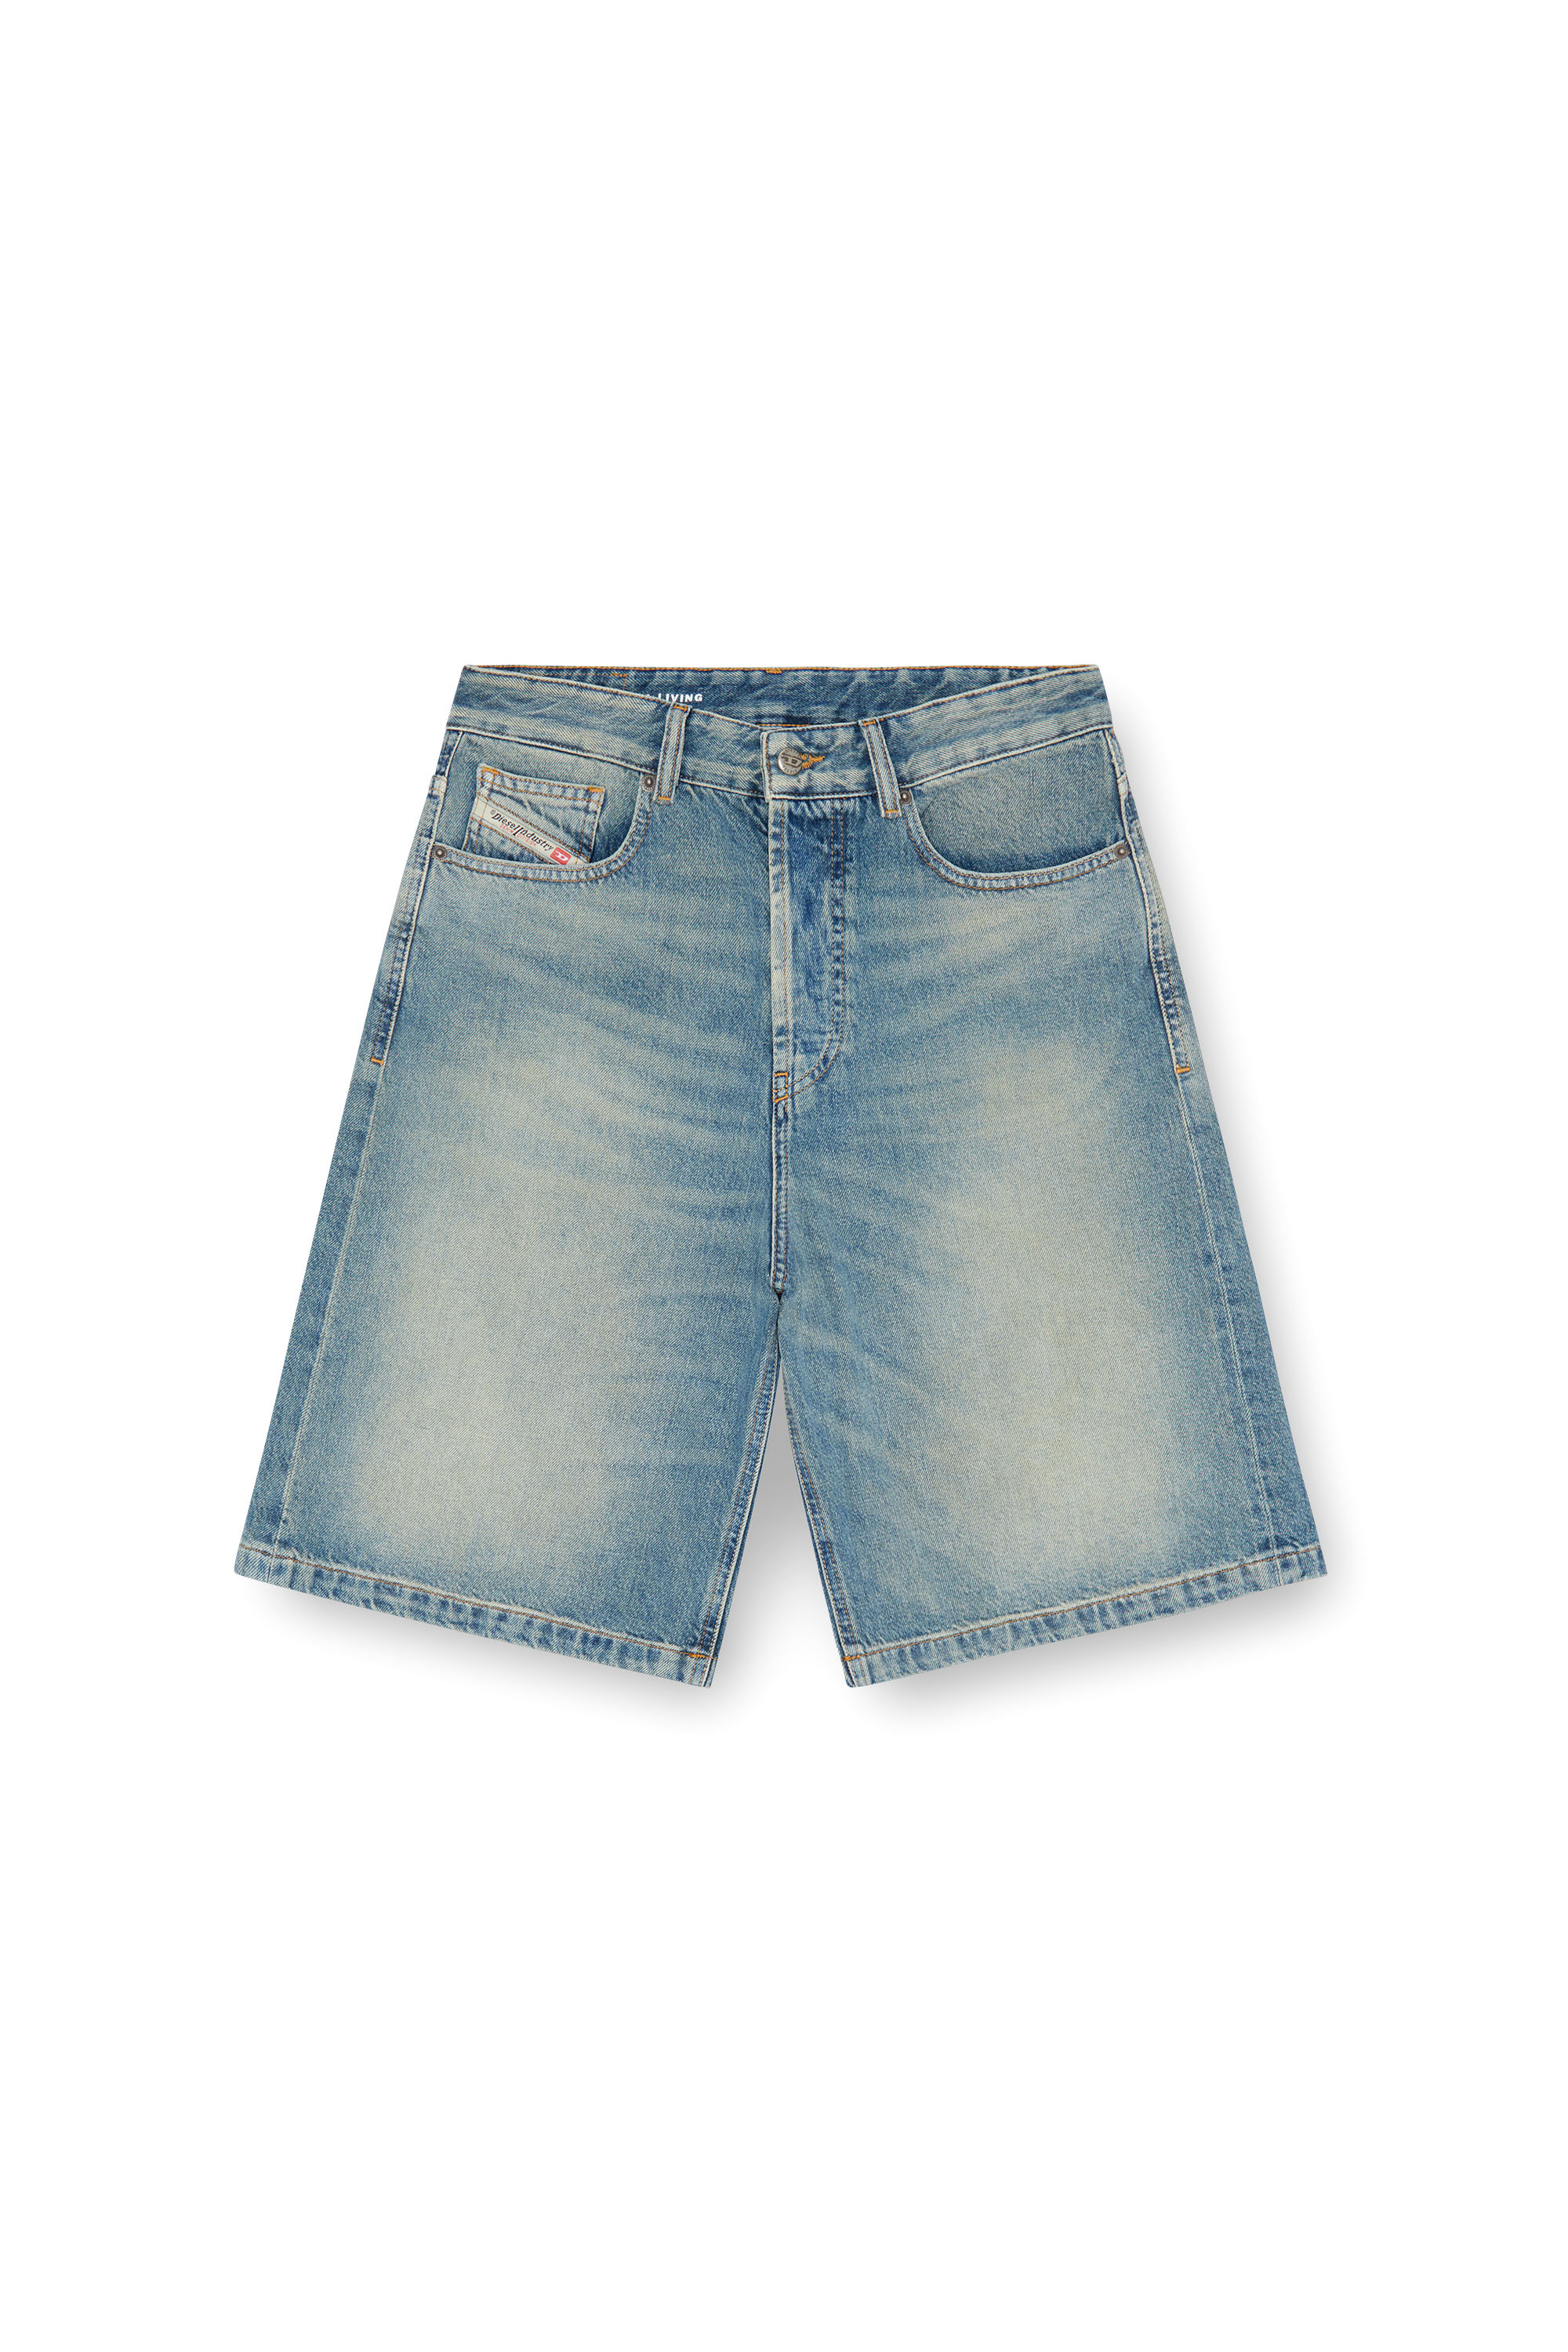 Diesel - DE-SIRE-SHORT, Mujer Pantalones cortos en denim in Azul marino - Image 4